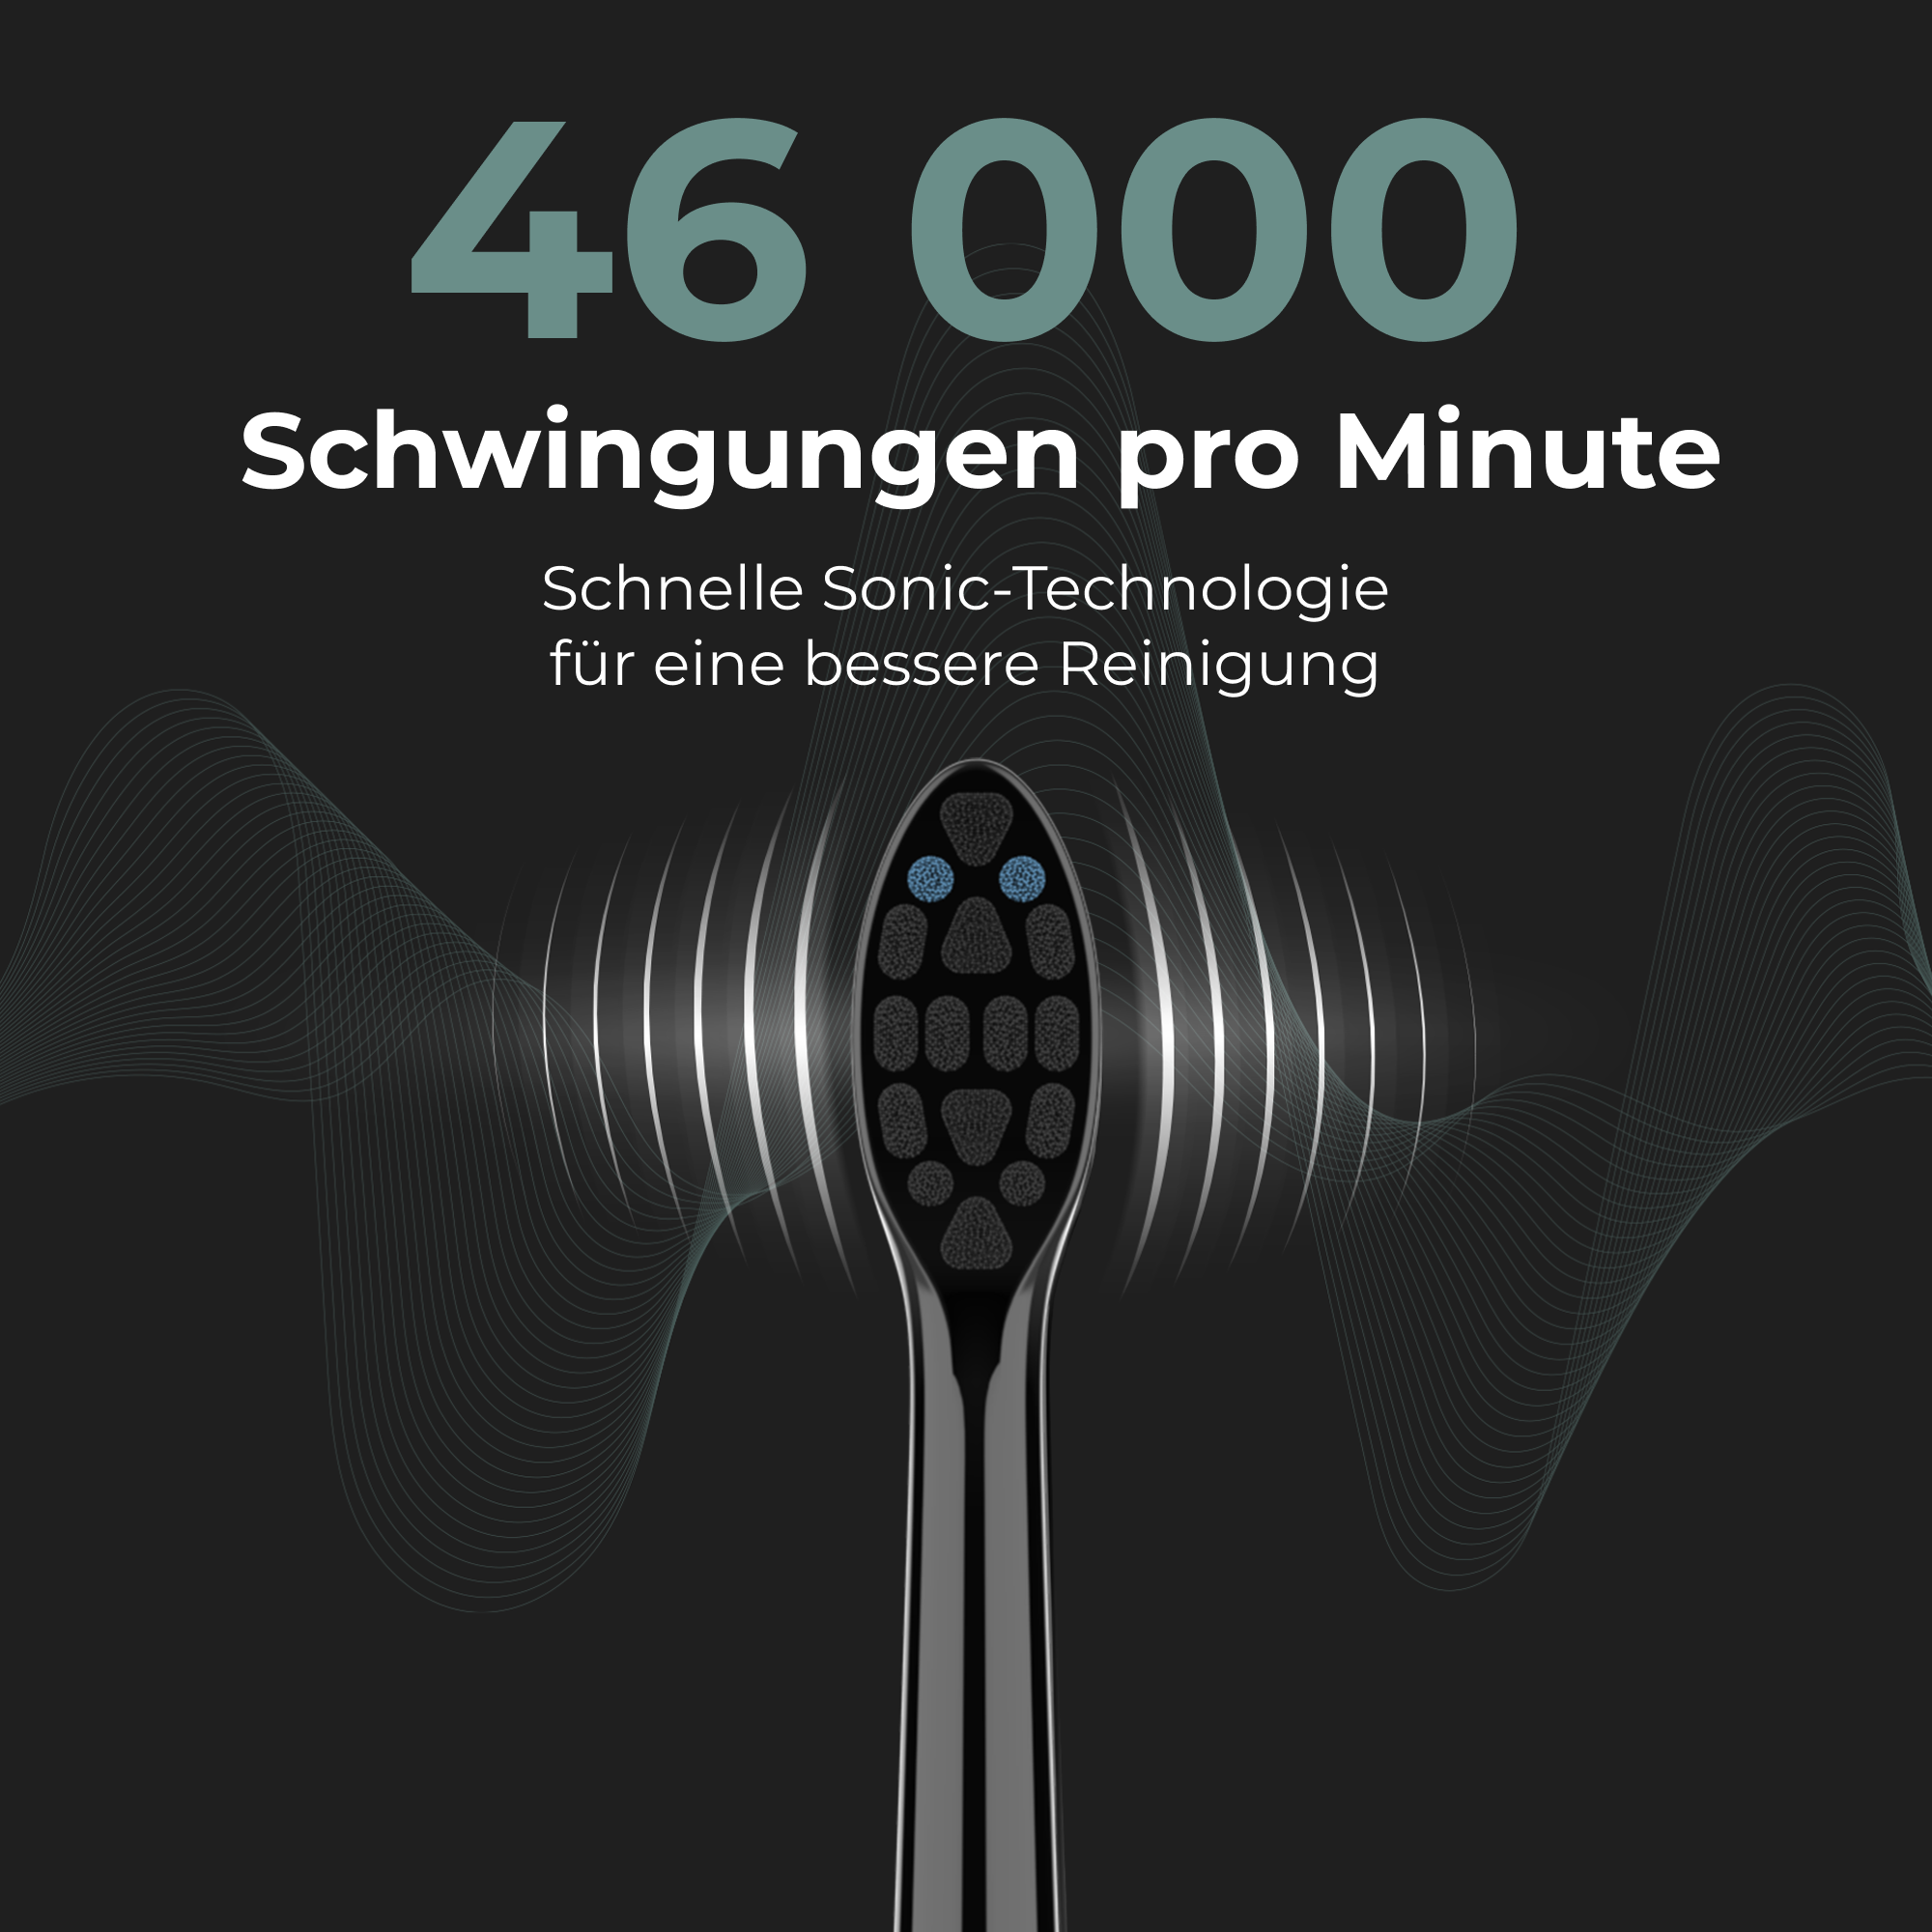 Schwarz AENO Elektrische Schall DB4 Zahnbürste